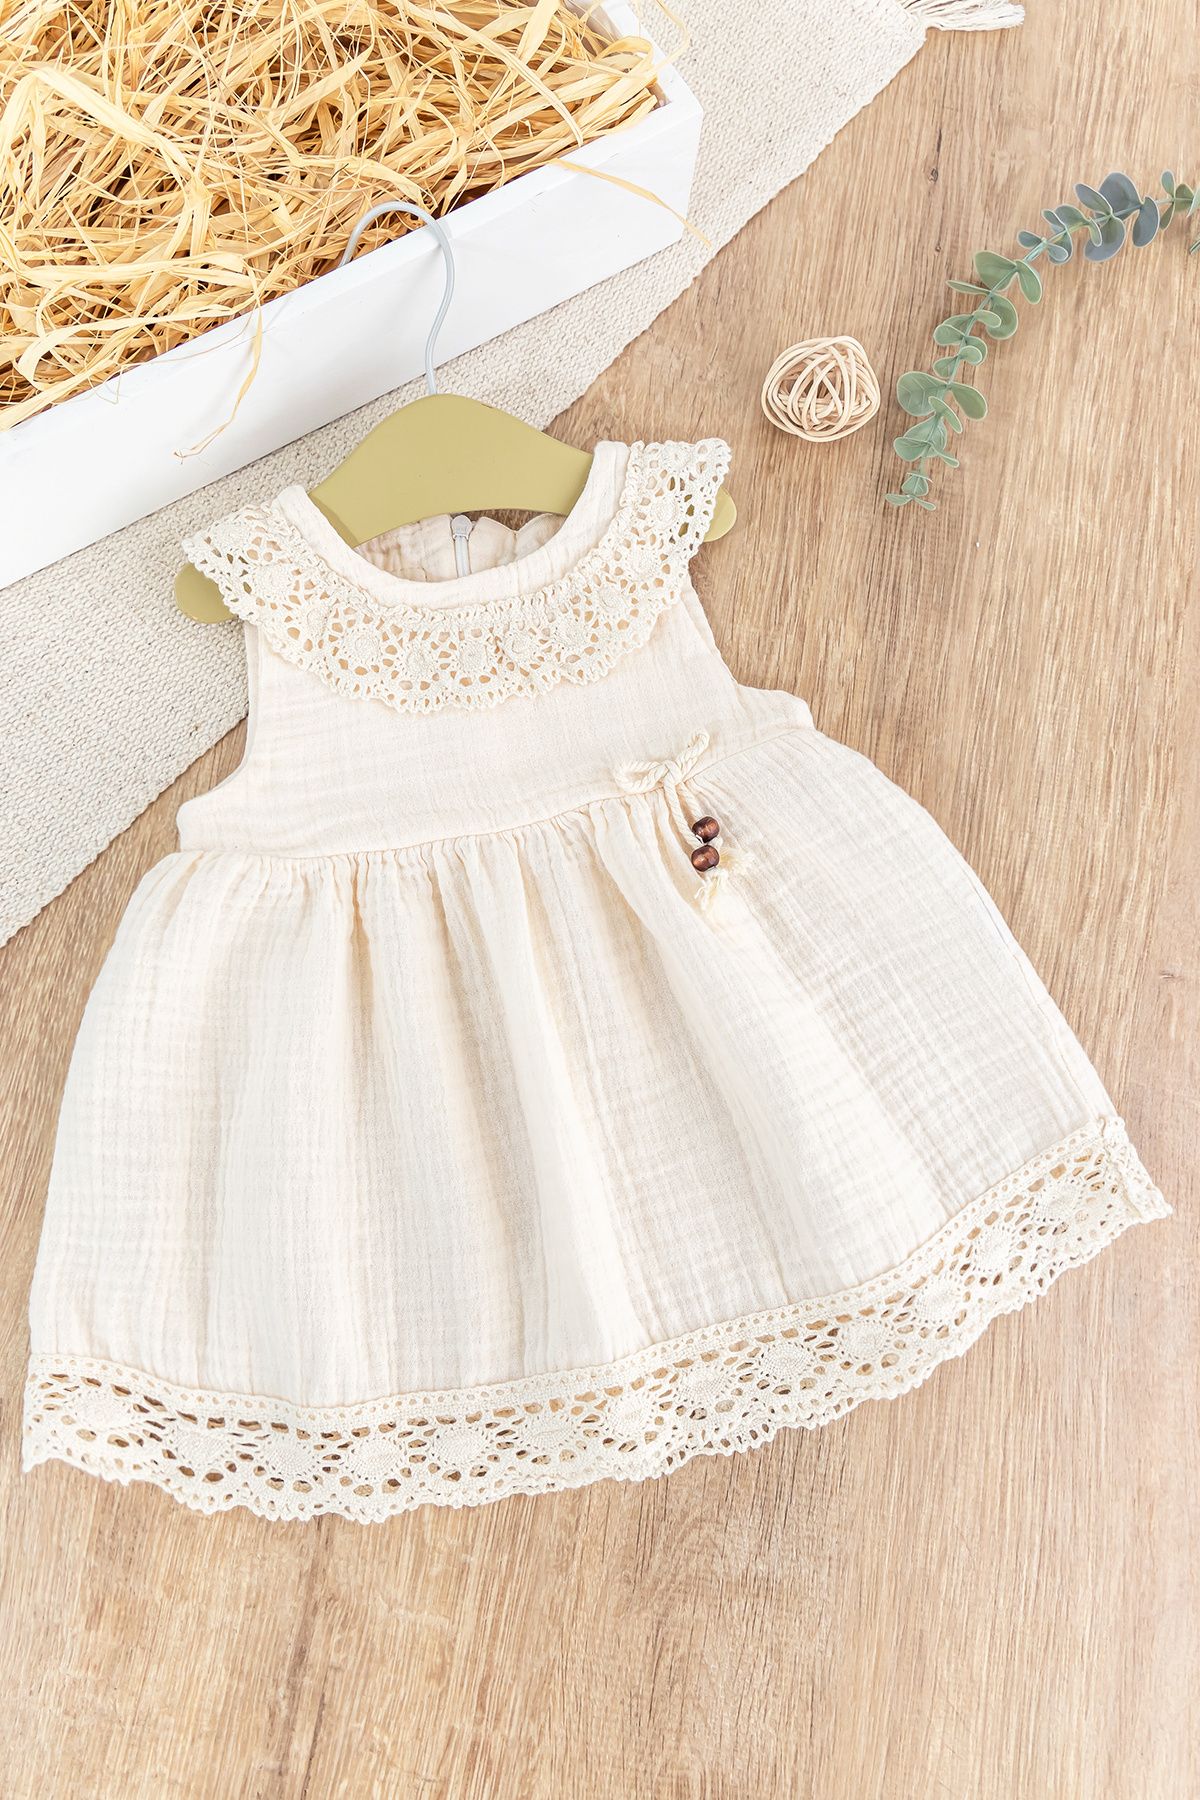 Babymod Dantelli Güpür Yakalı Yazlık Askılı Kız Bebek Elbise